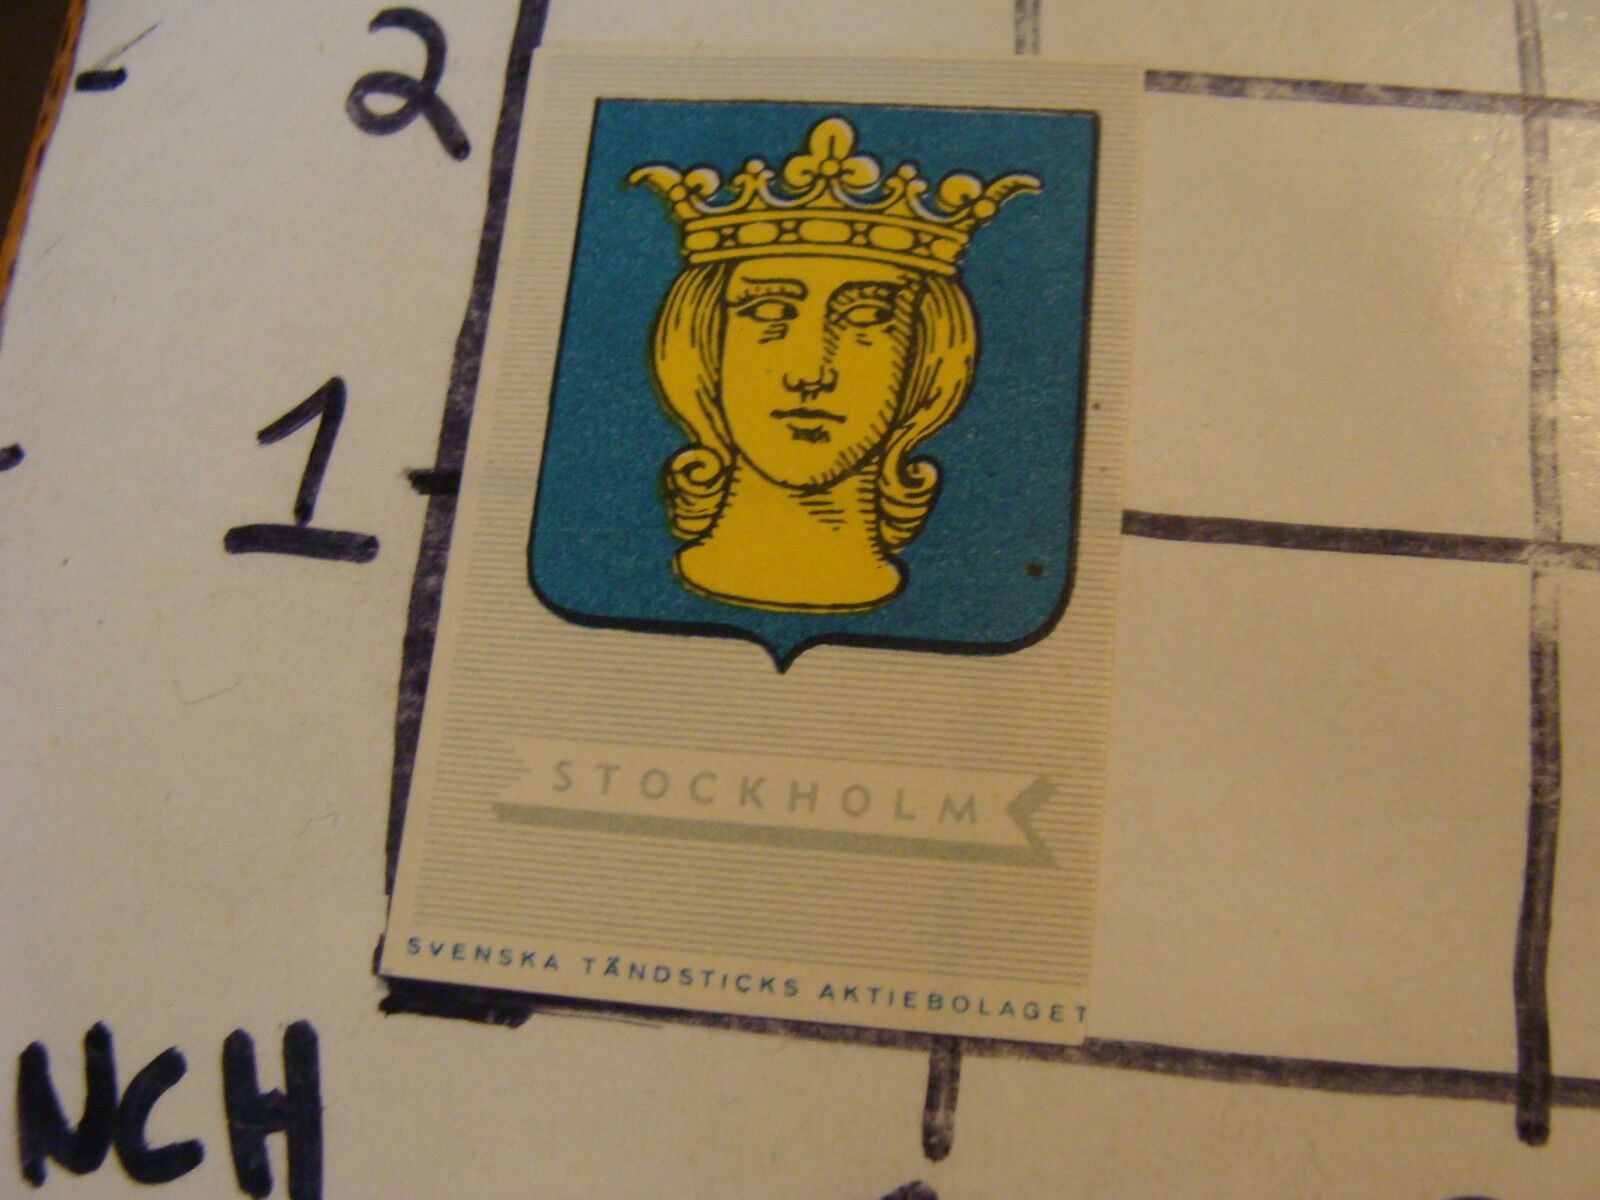 Vintage matchbook label: STOCKHOLM, SVENSKA, TANDSTICKS, AKTIEBOLAGET